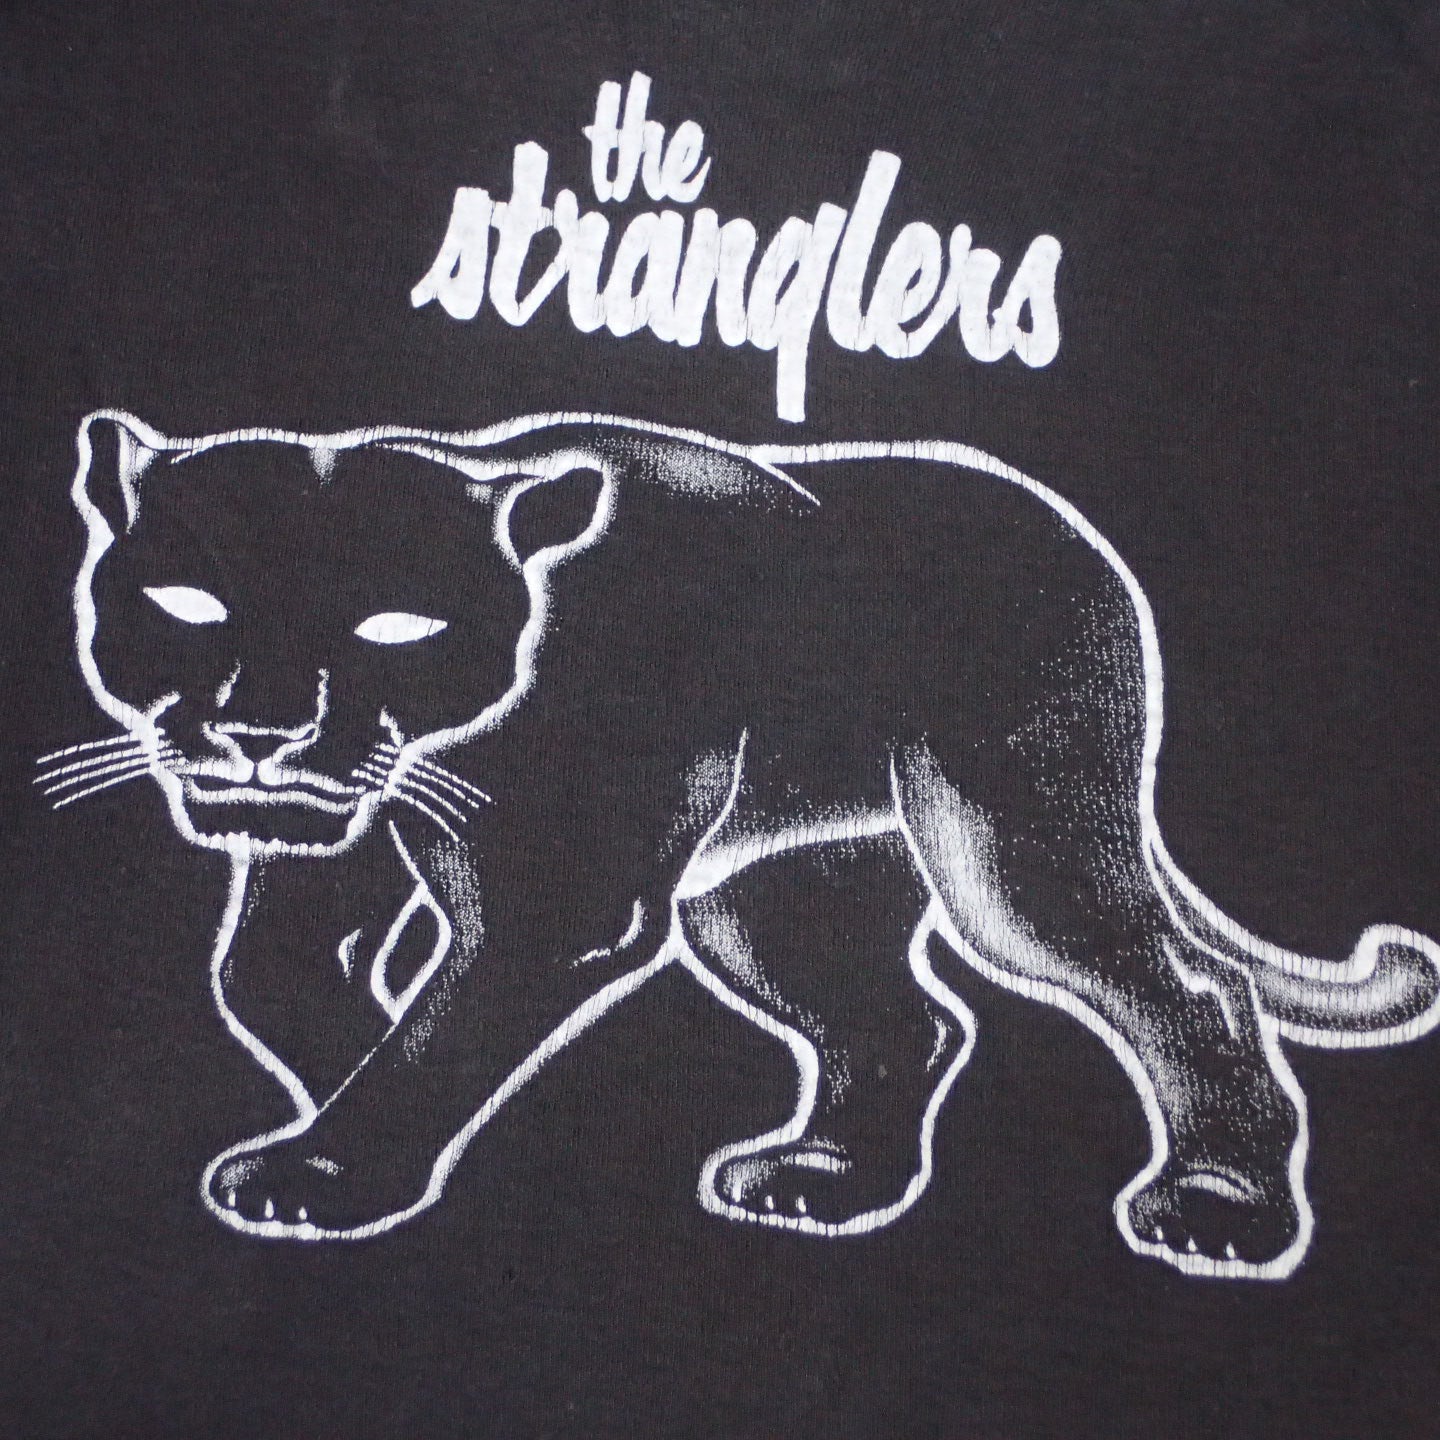 80s The Stranglers T-shirt "Feline Tee"